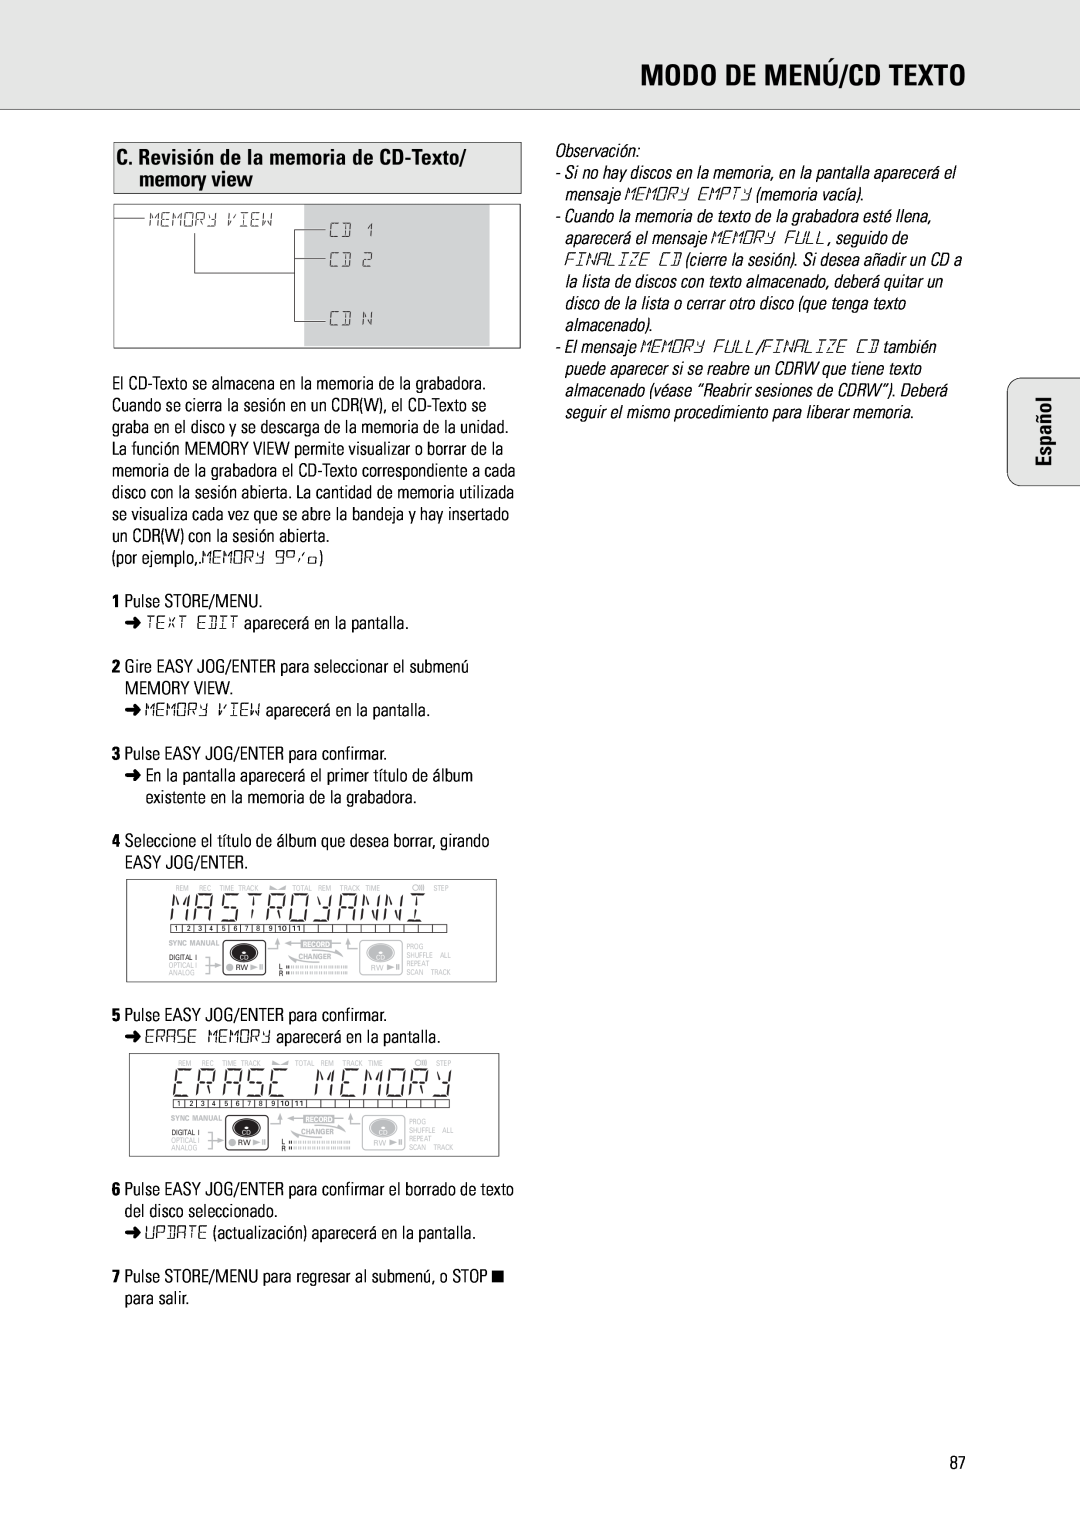 Philips CDR775 C. Revisión de la memoria de CD-Texto/memory view, Memory View Cd Cd, Cd N, Modo De Menú/Cd Texto, Español 